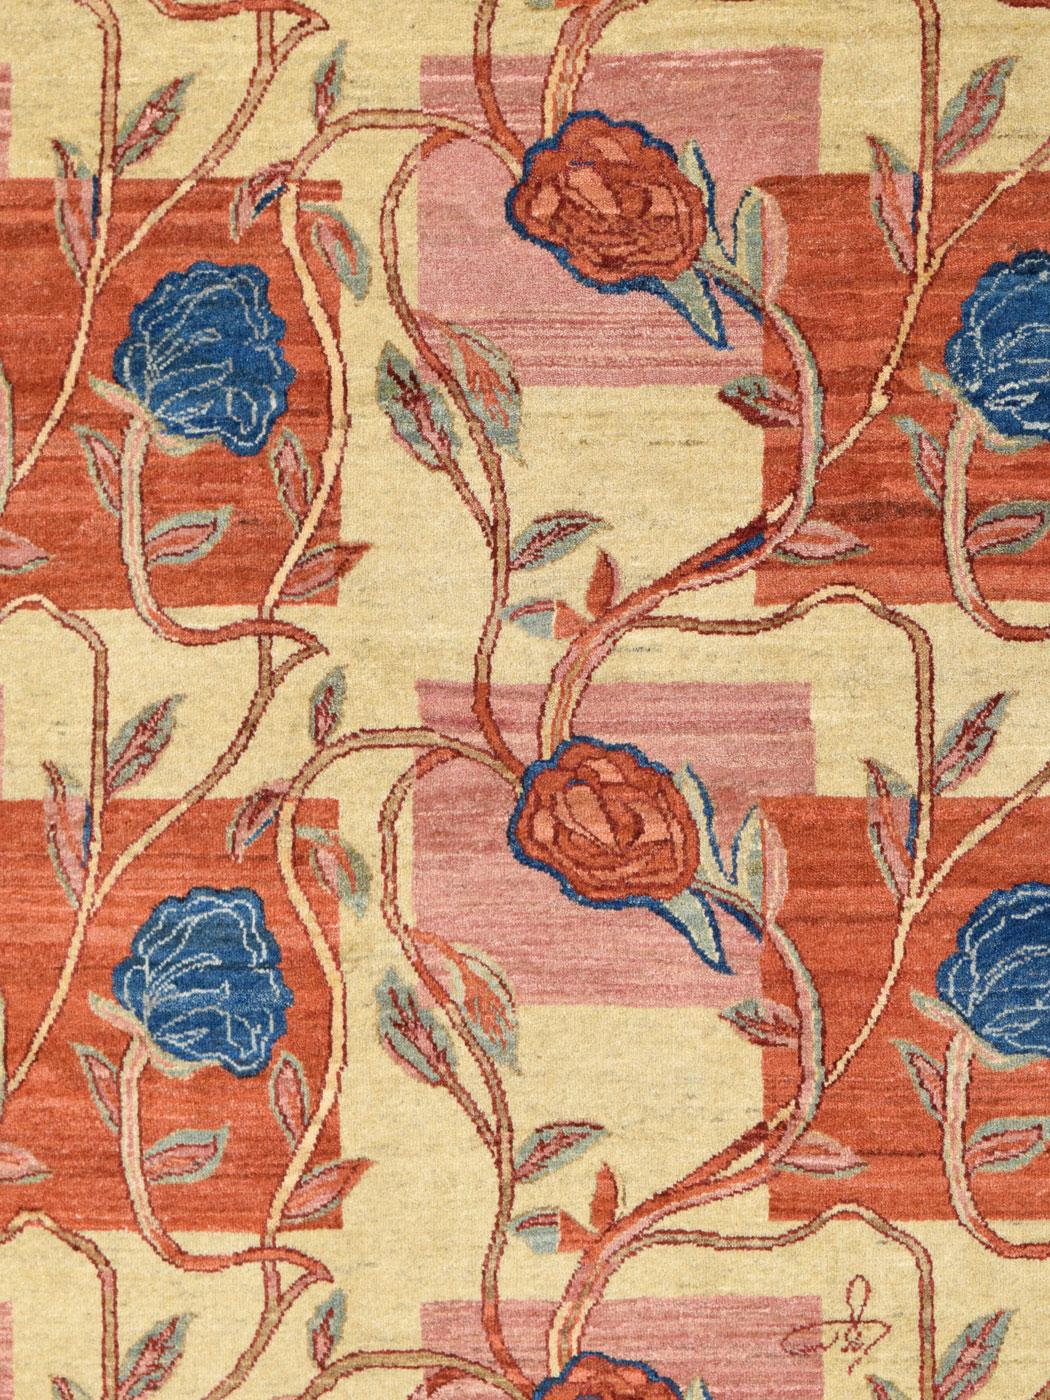 Accueillez dans votre maison ce tapis persan Orley Shabahang en laine rouge, rose, bleu et crème à motifs floraux de 4 pi x 6 pi. Aussi serein qu'une scène de roses luxuriantes serpentant autour d'un treillis, 